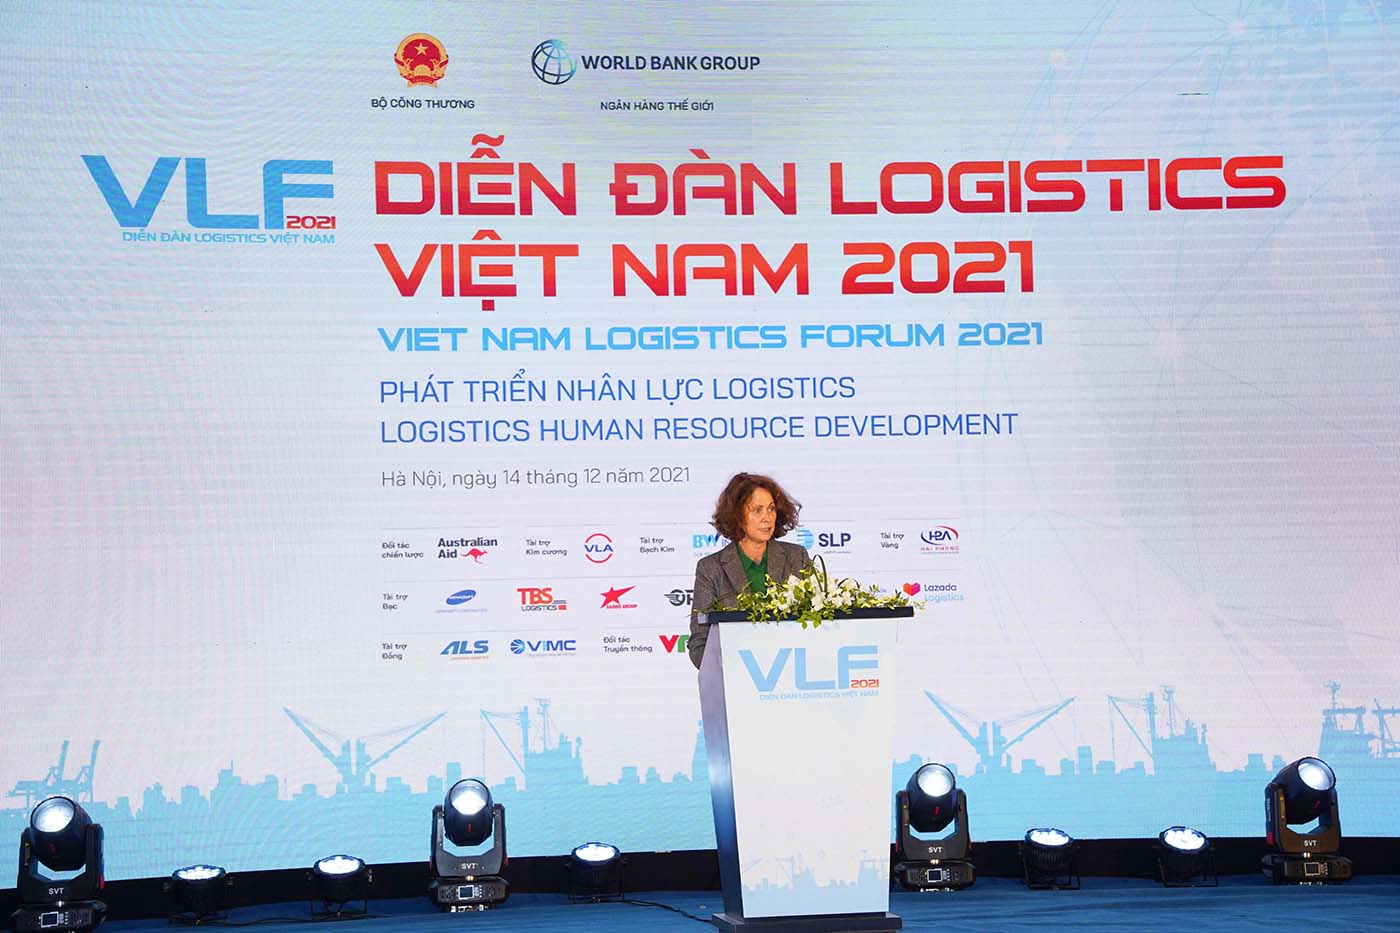 dien-dan-logistics-viet-nam-2021-uu-tien-phat-trien-nhan-luc-va-tap-doan-logistics